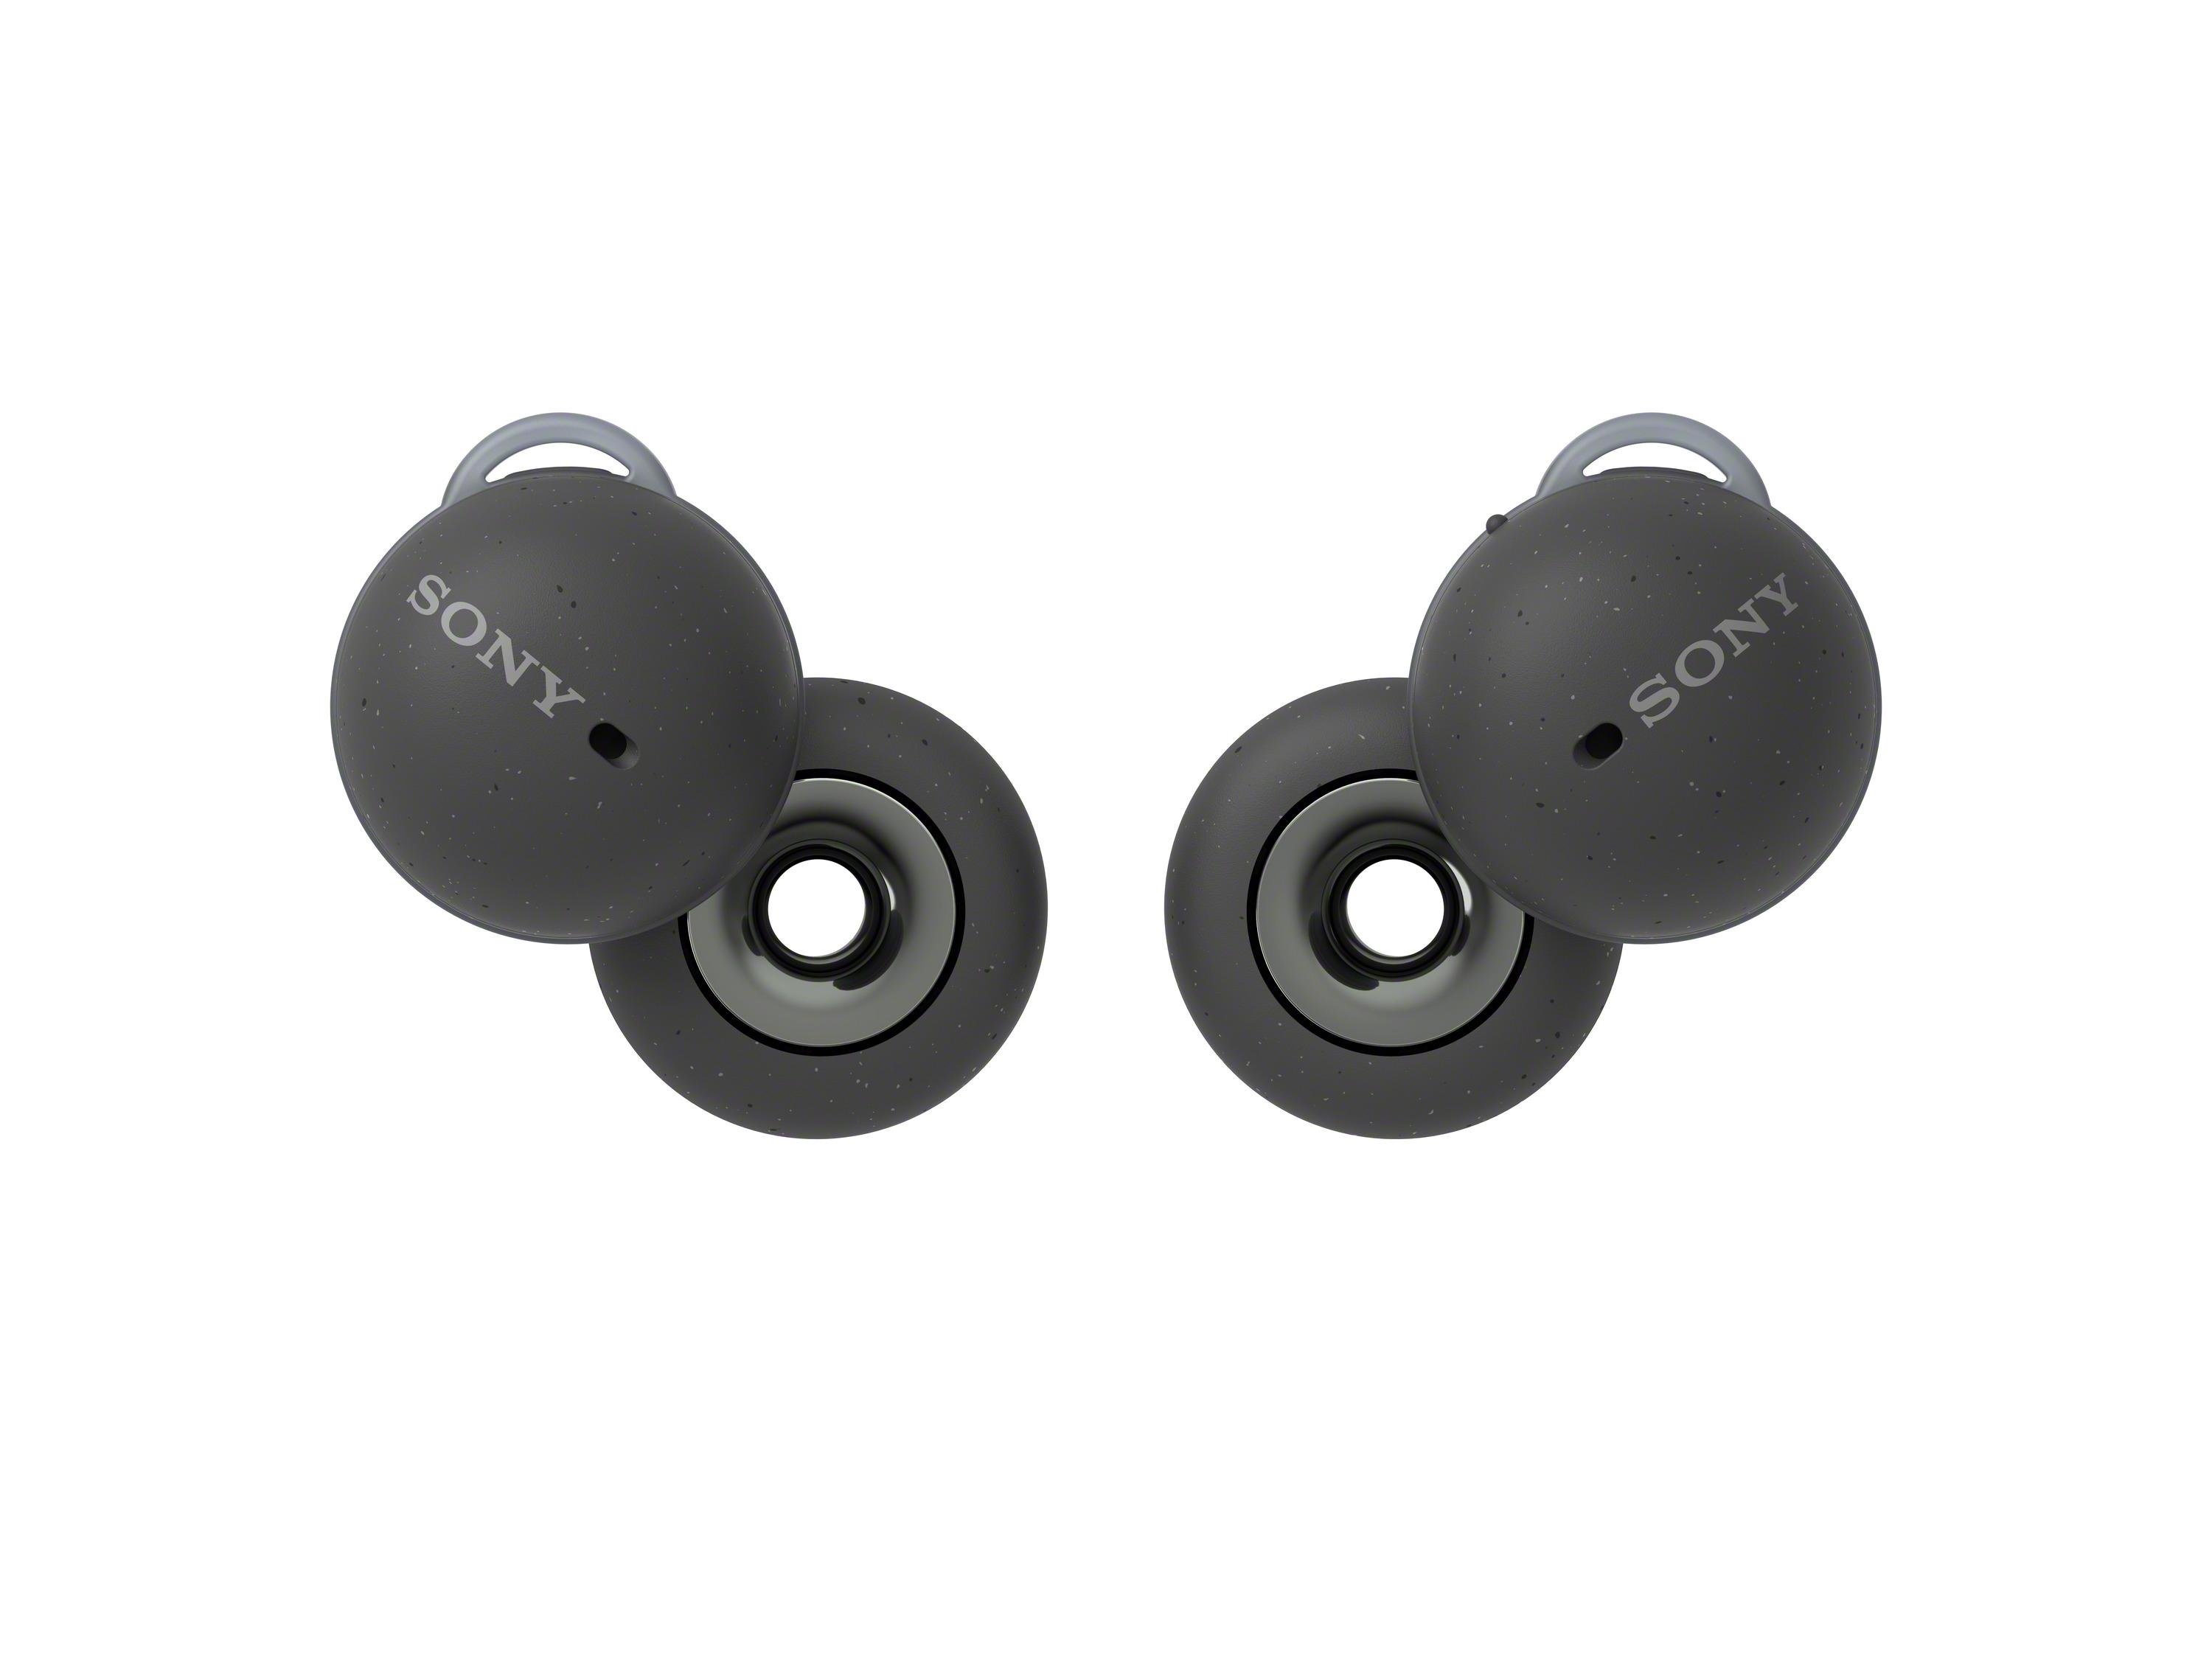 Sonys neue In-Ear-Kopfhörer haben Löcher thumbnail